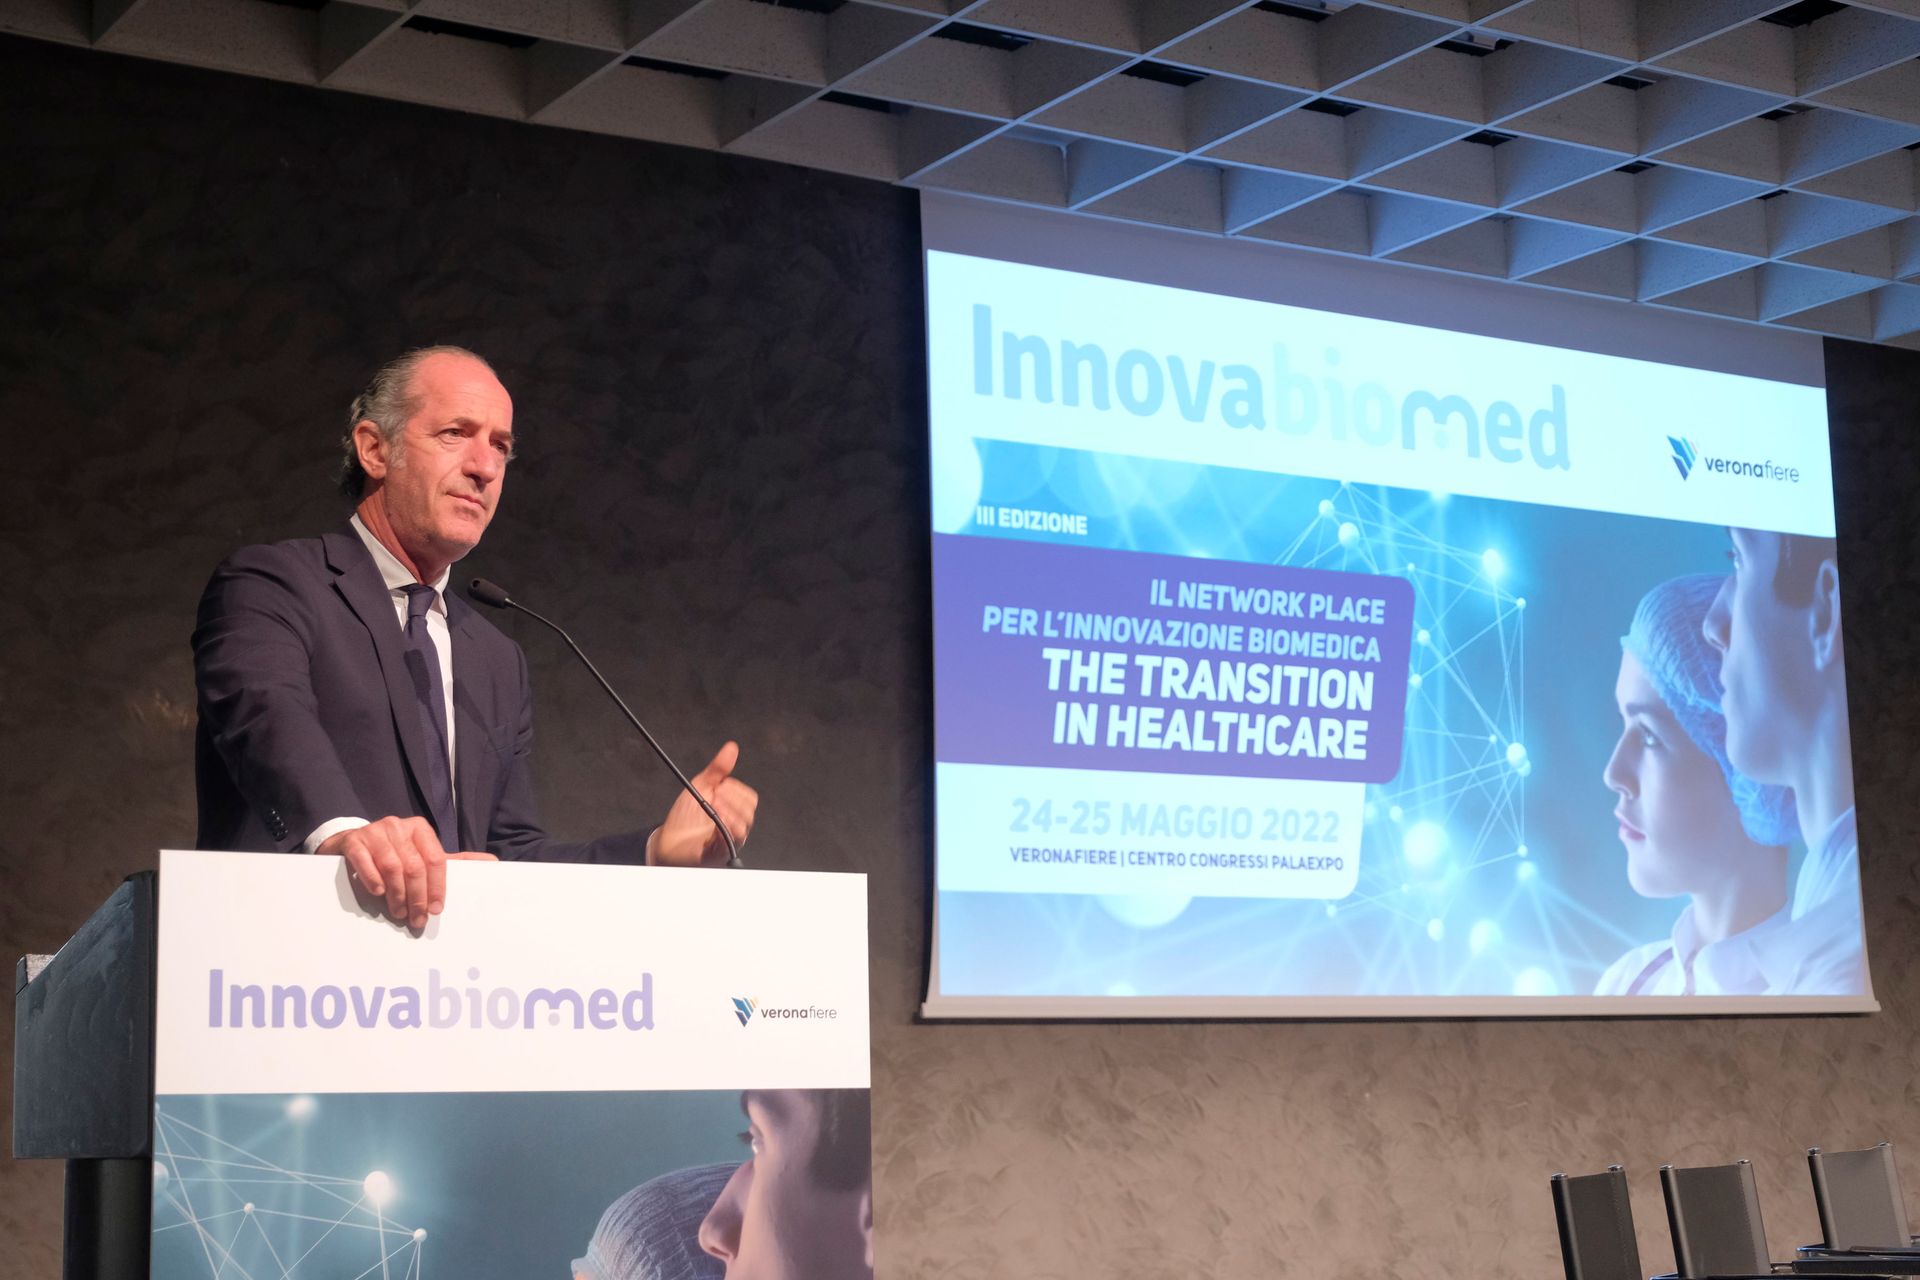 Luca Zaia all'inaugurazione del network e formation place "Innovabiomed" al Palaexpo di Verona il 24 maggio 2022